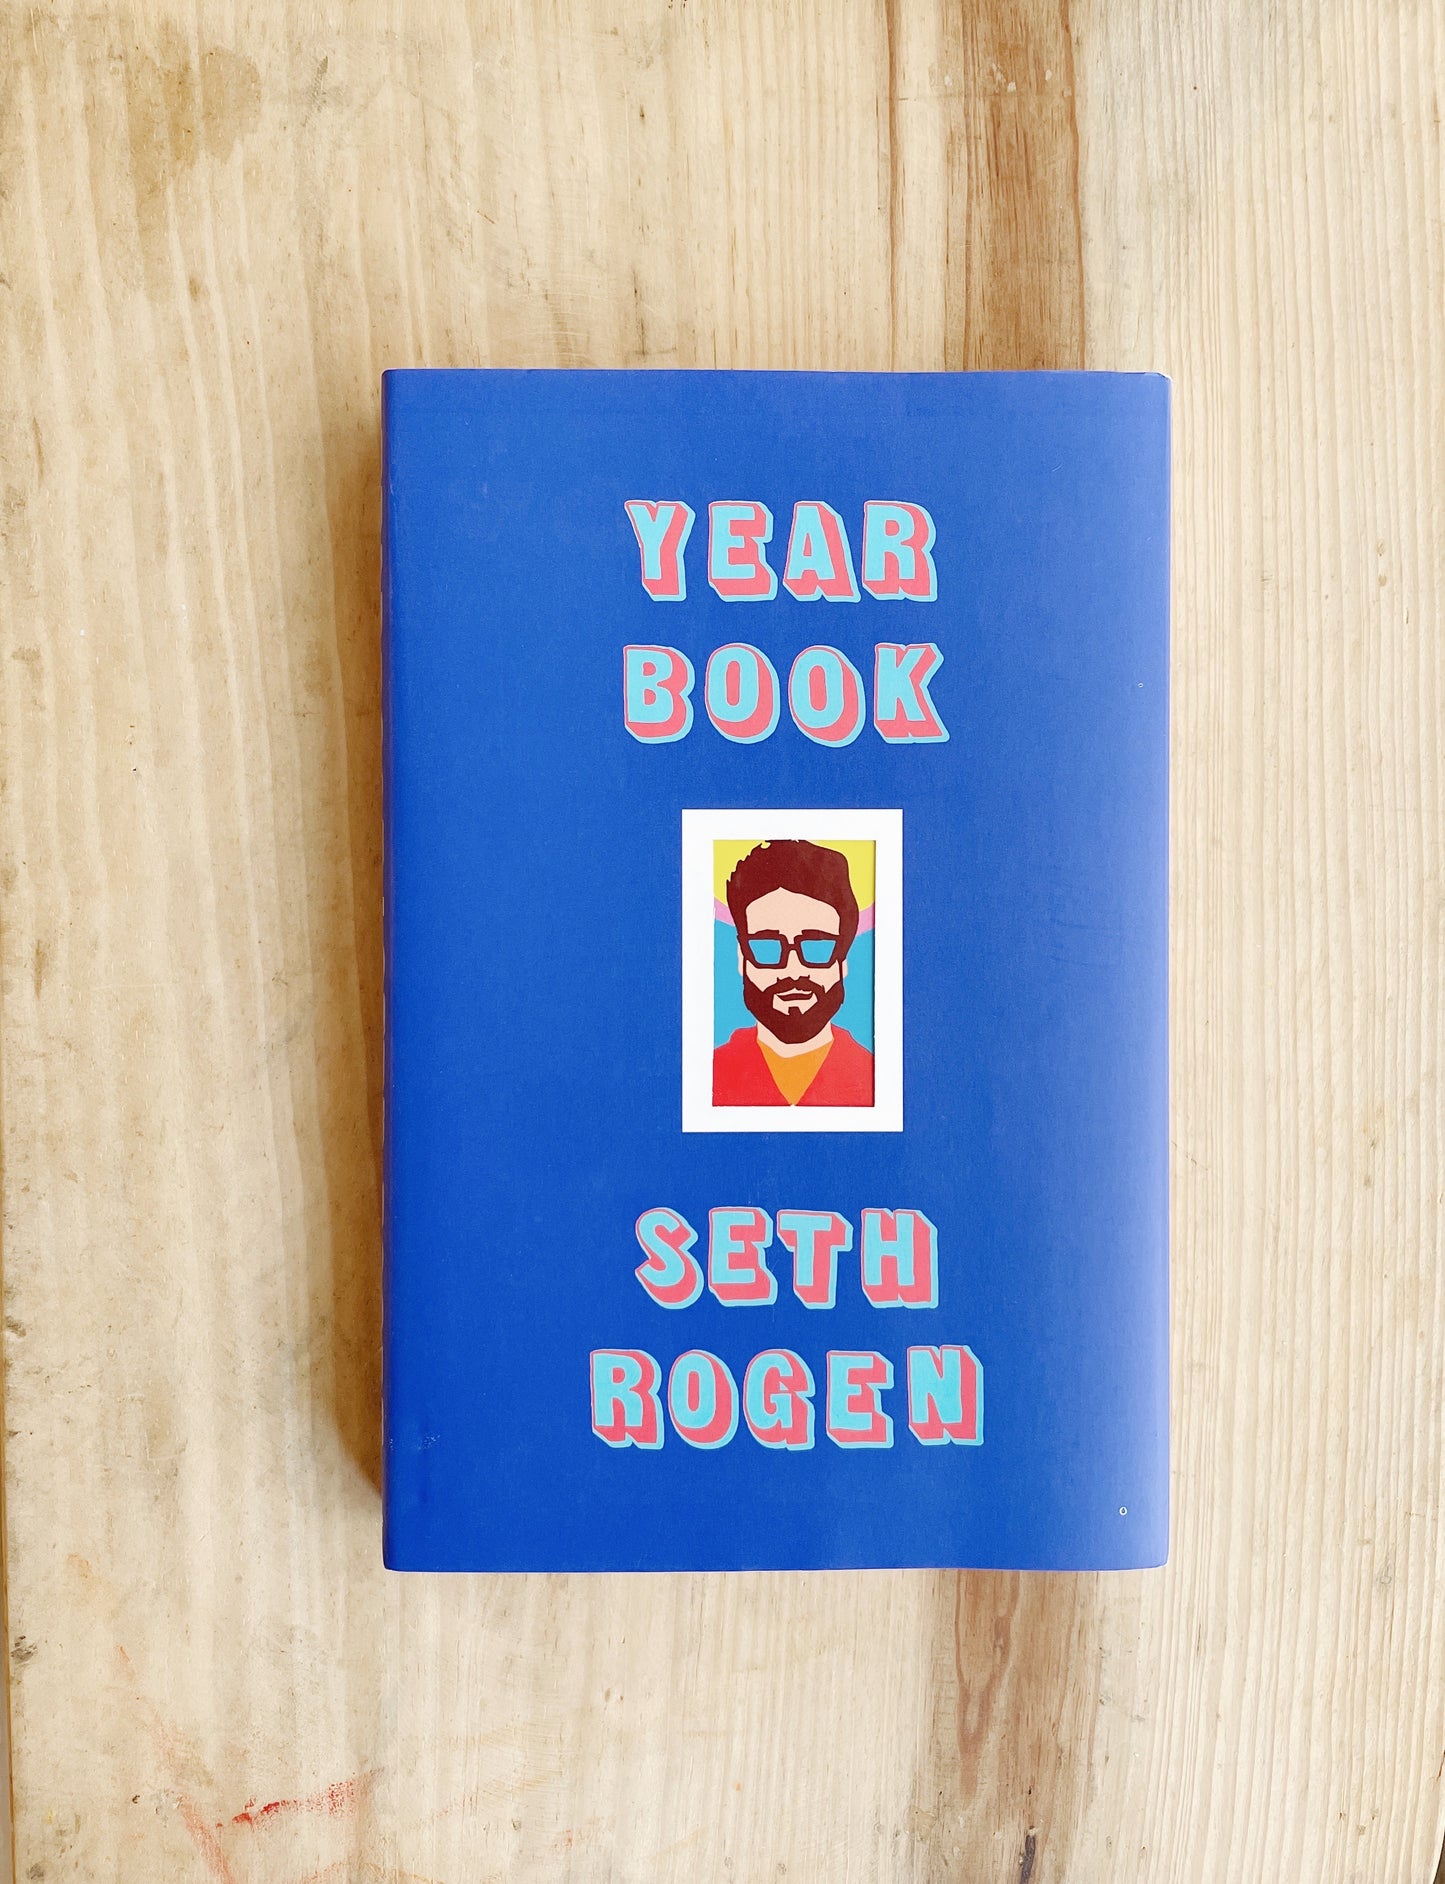 Seth Rogen - Year Book